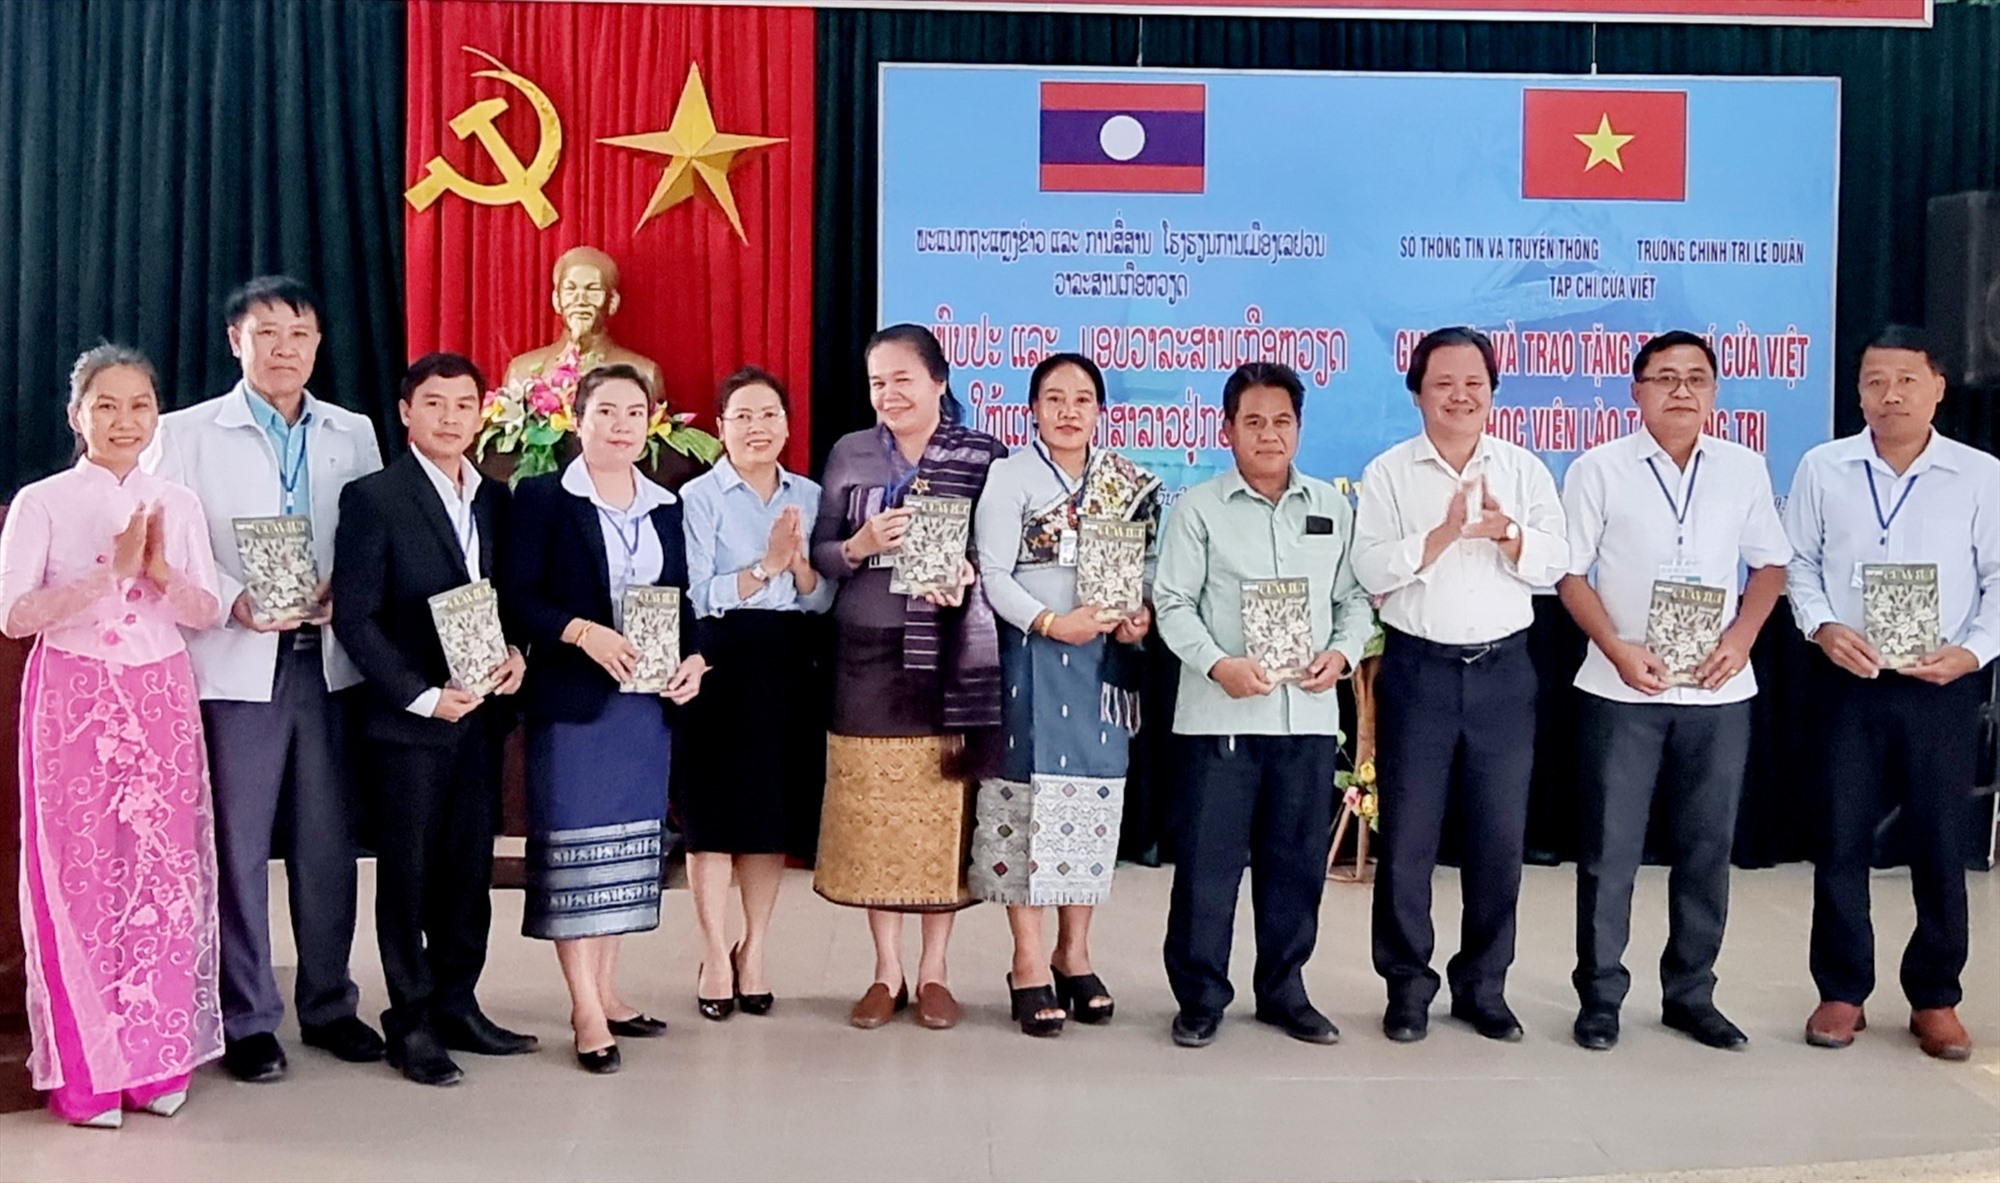 Lãnh đạo Sở Thông tin và Truyền thông phối hợp với Trường Chính trị Lê Duẩn, Tạp chí Cửa Việt trao tặng Tạp chí Cửa Việt cho học viên Lào - Ảnh: K.S